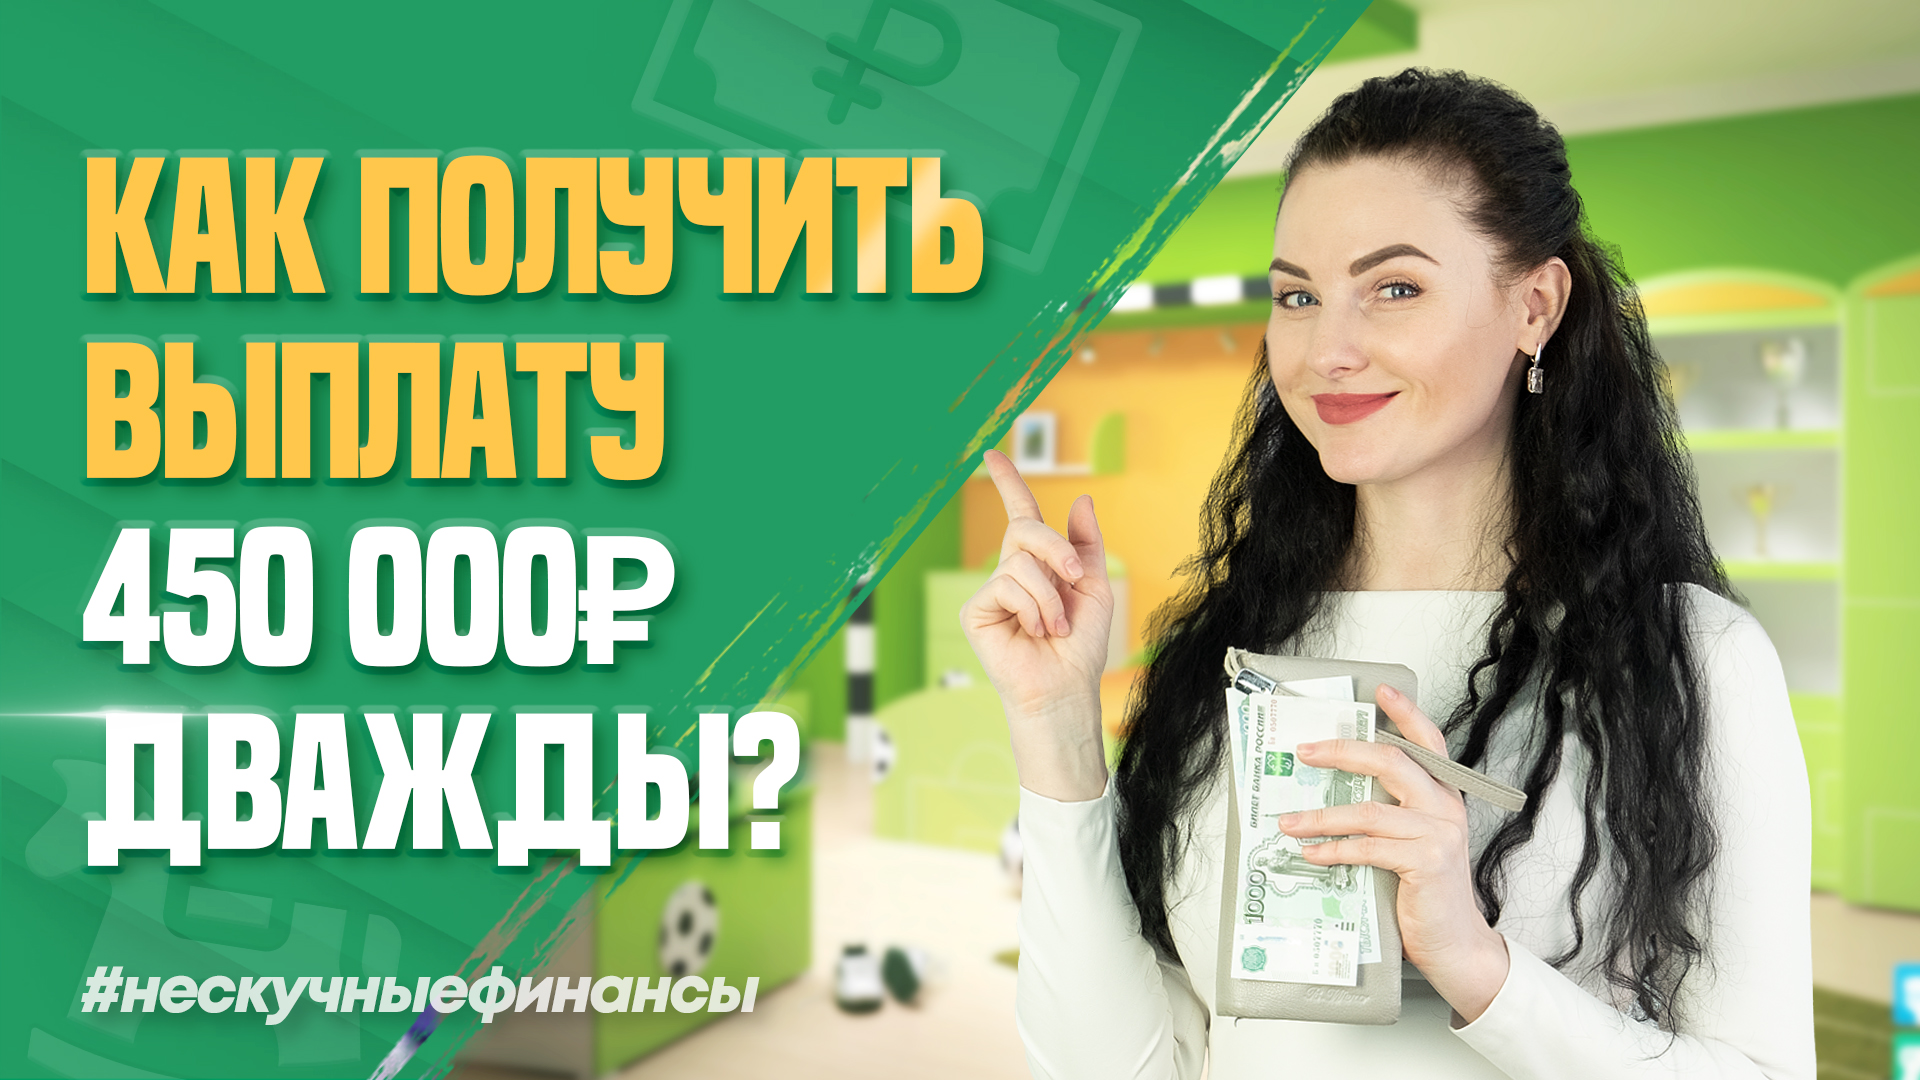 Как многодетным семьям получить 900 000 рублей на ипотеку?